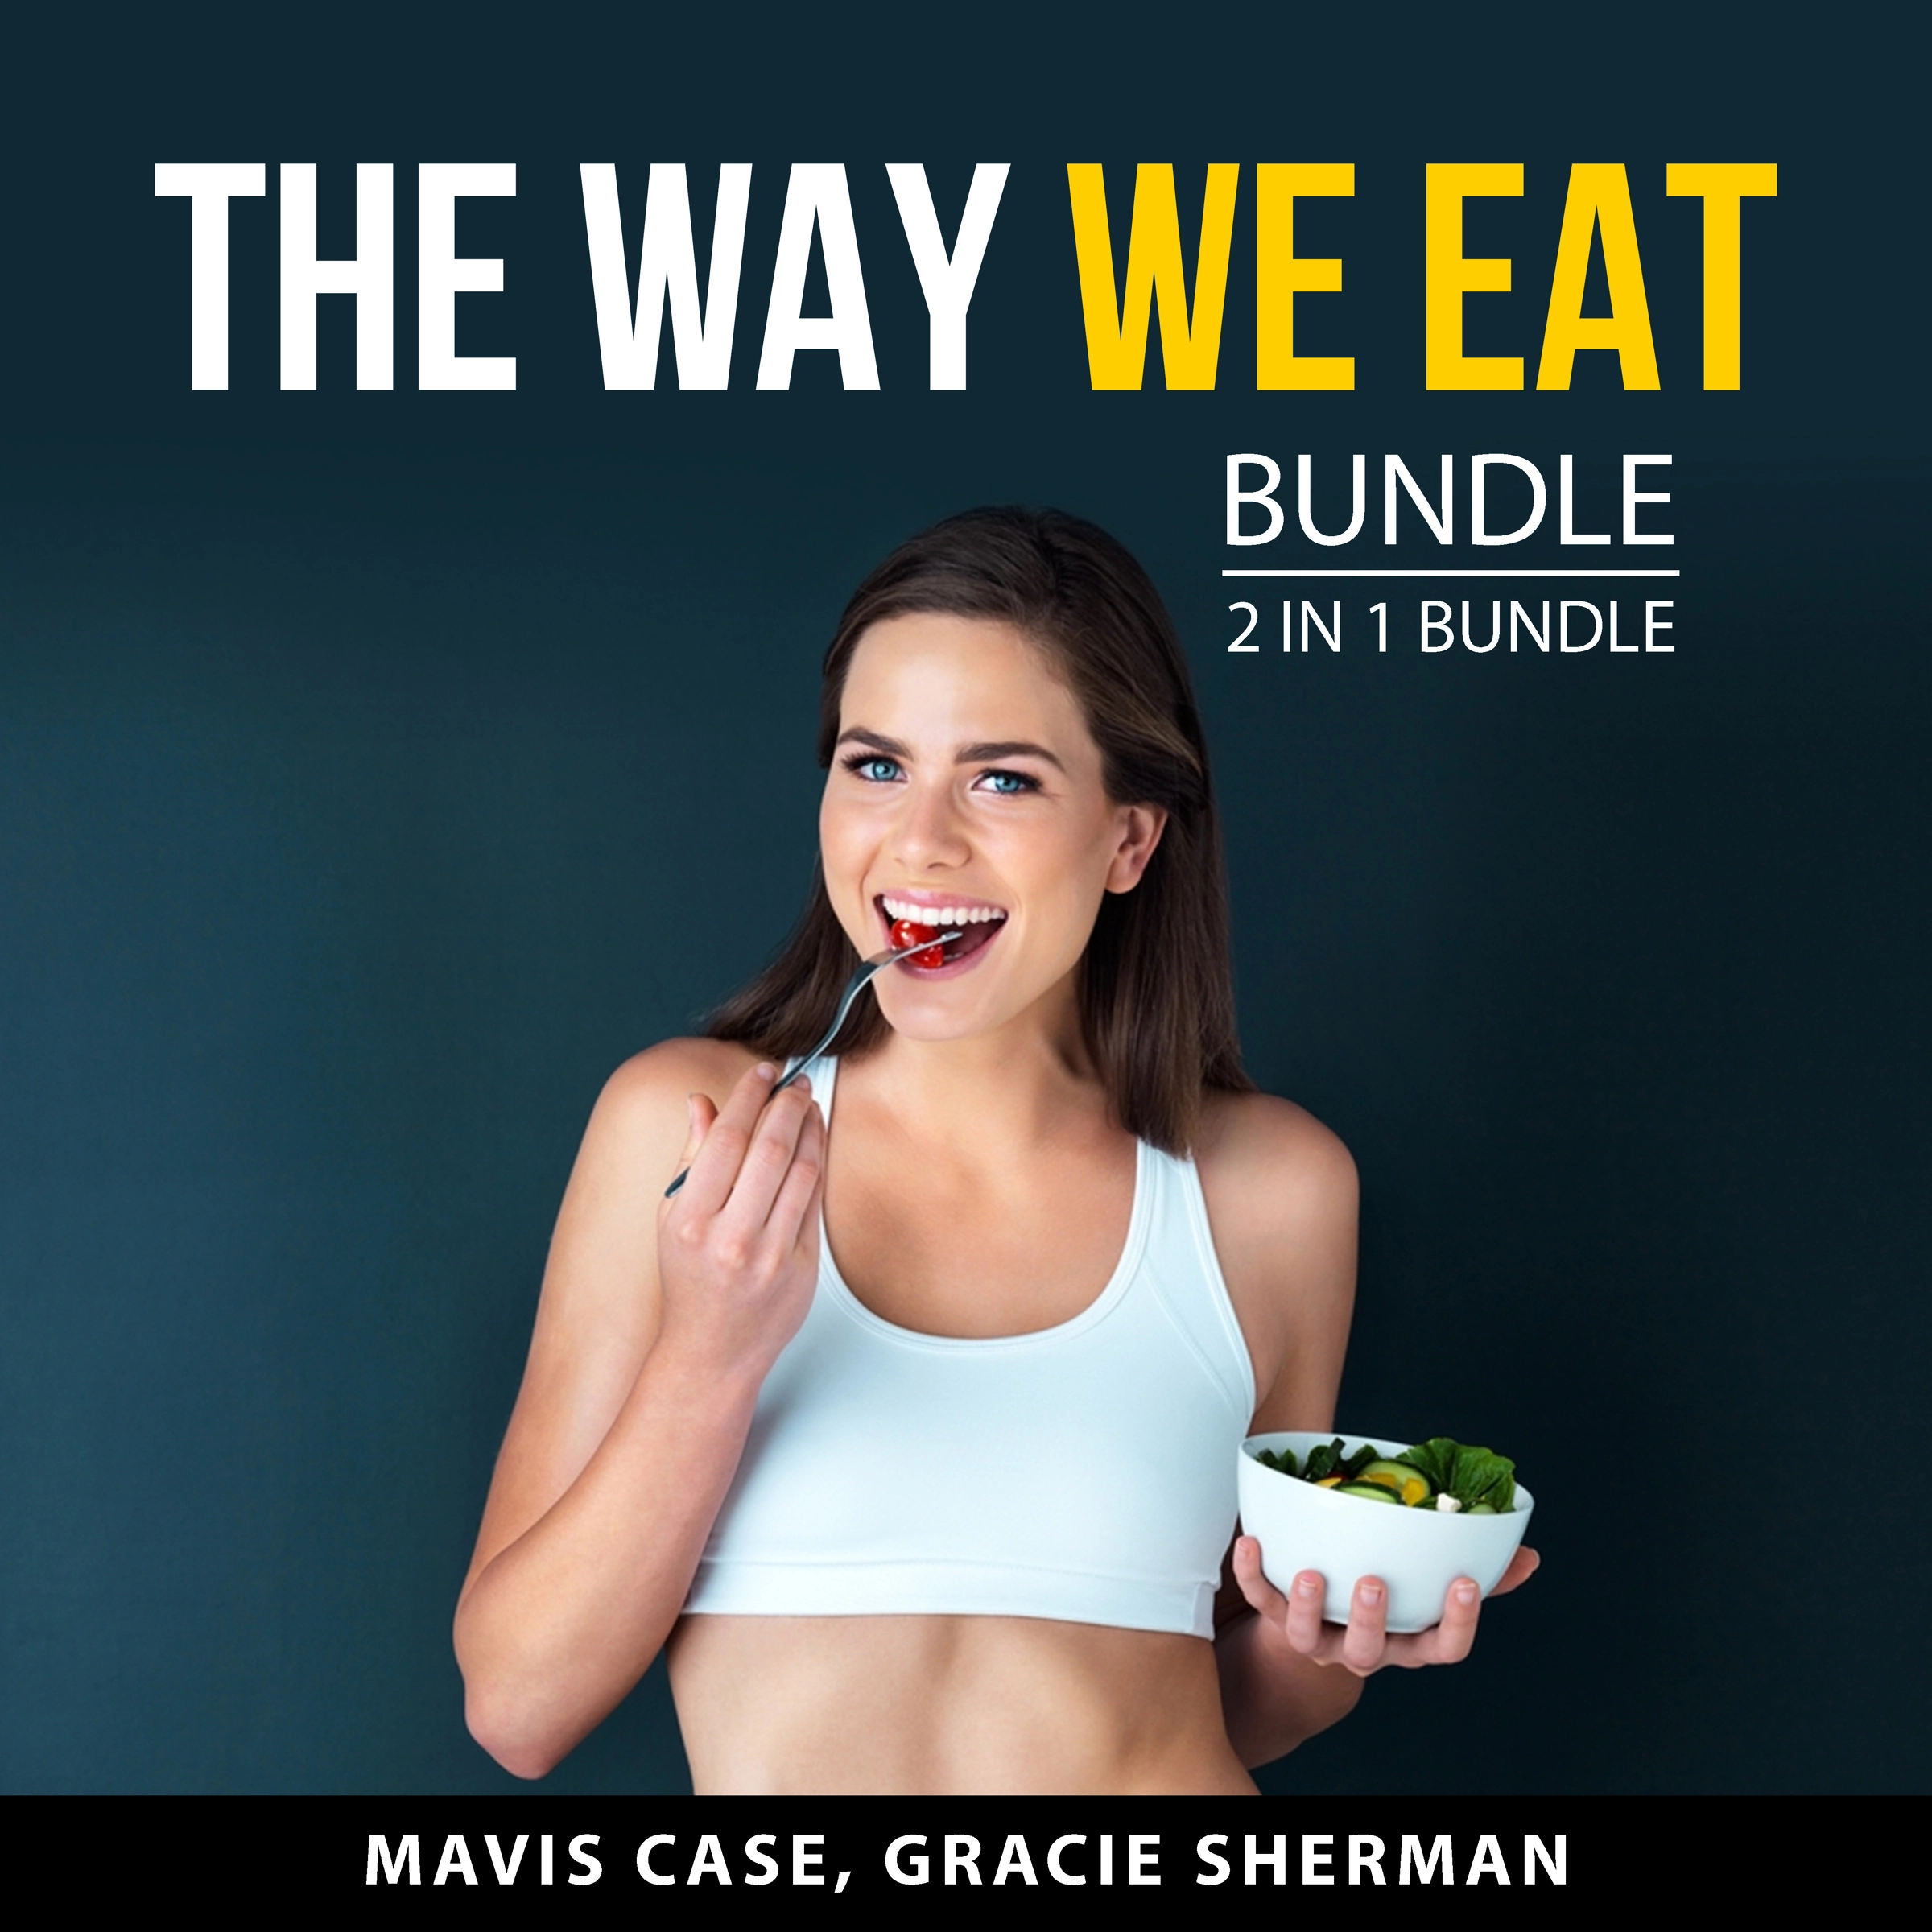 The Way We Eat Bundle, 2 in 1 Bundle Audiobook by Gracie Sherman